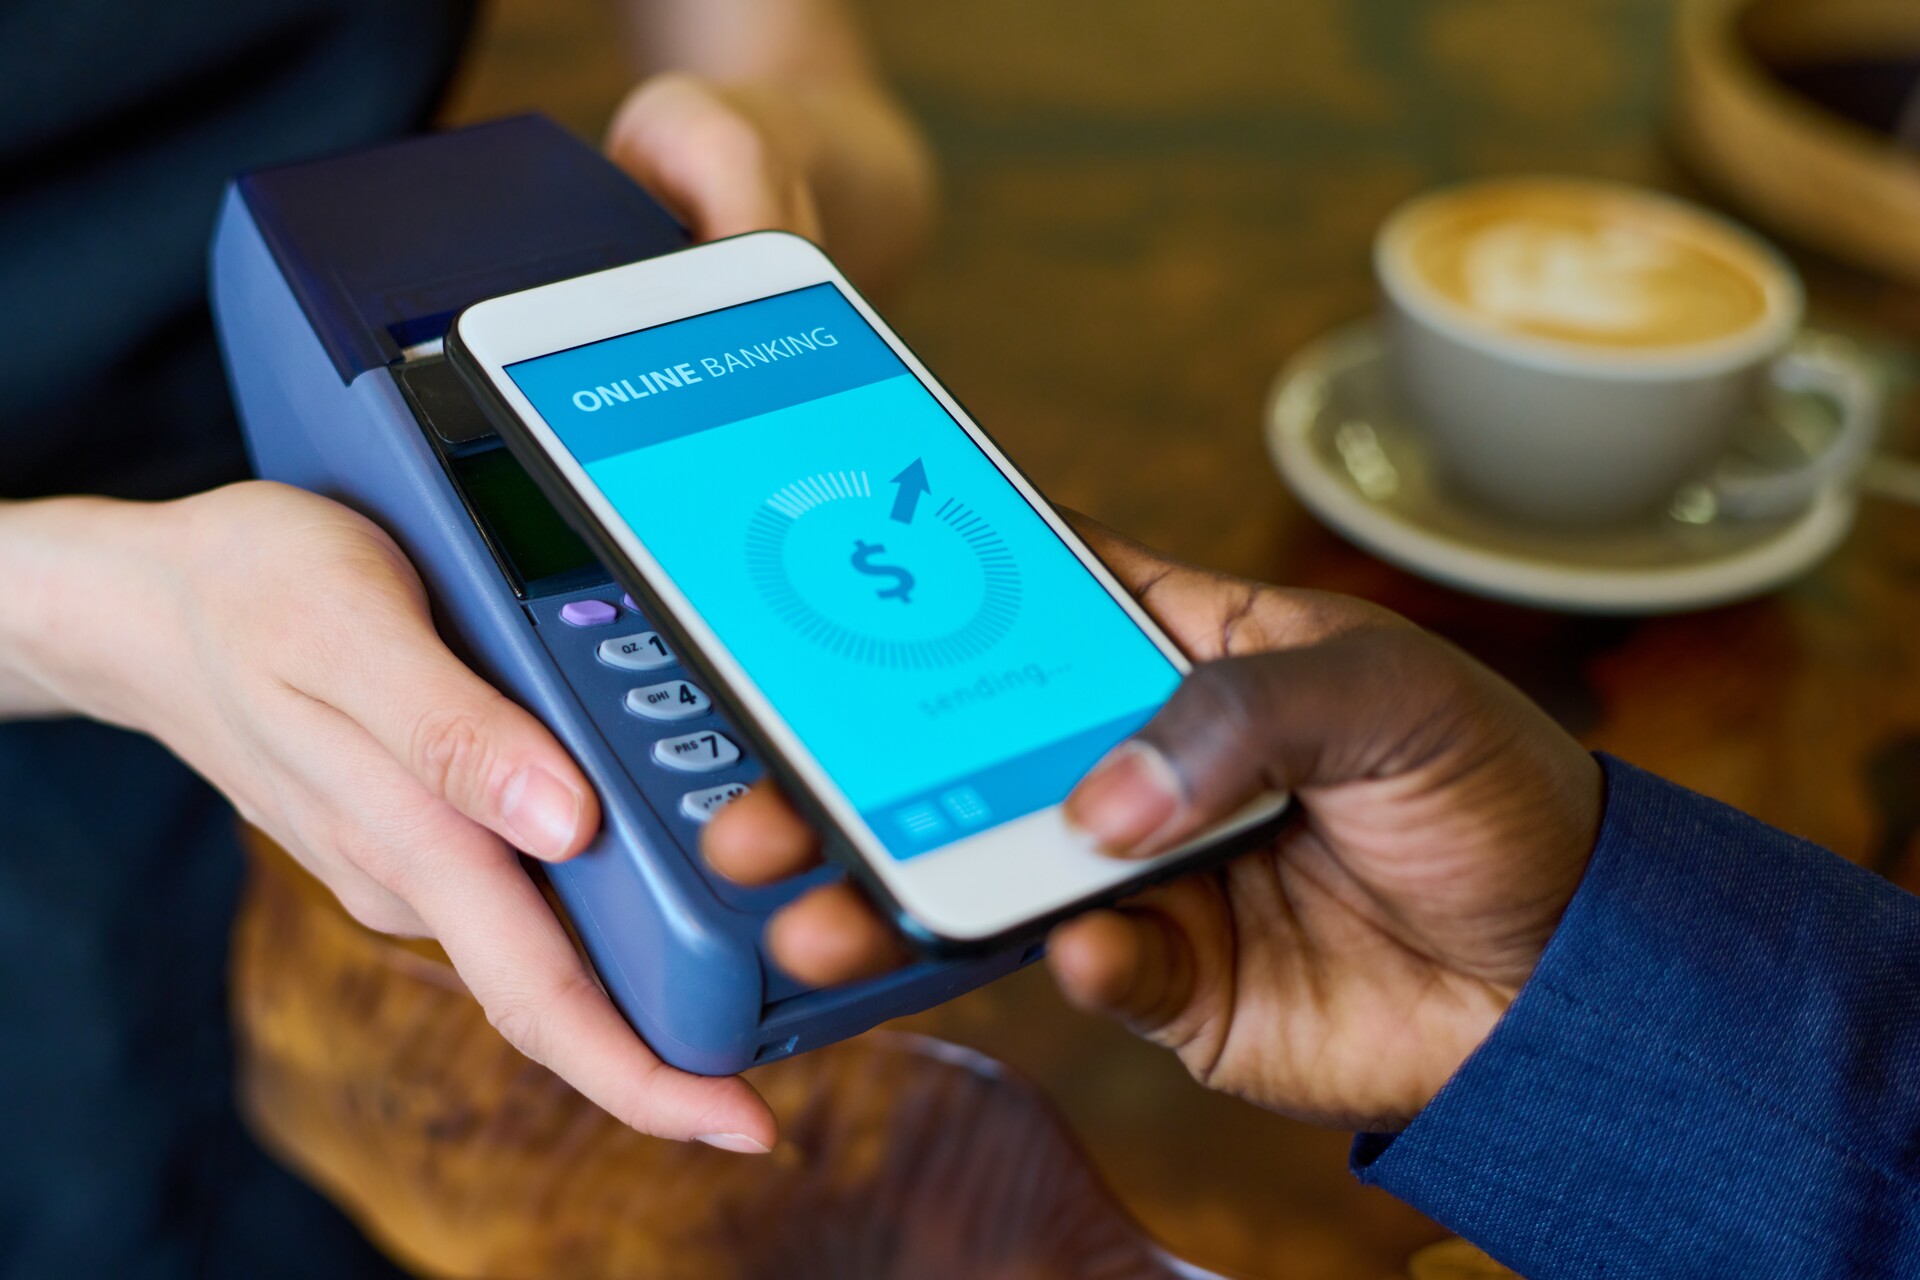 Mobiles Bezahlen: Vorteile des mobilen Bezahlens sind Komfort, Schnelligkeit und zusätzliche Sicherheitsfunktionen wie Fingerabdrücke oder Gesichtserkennung